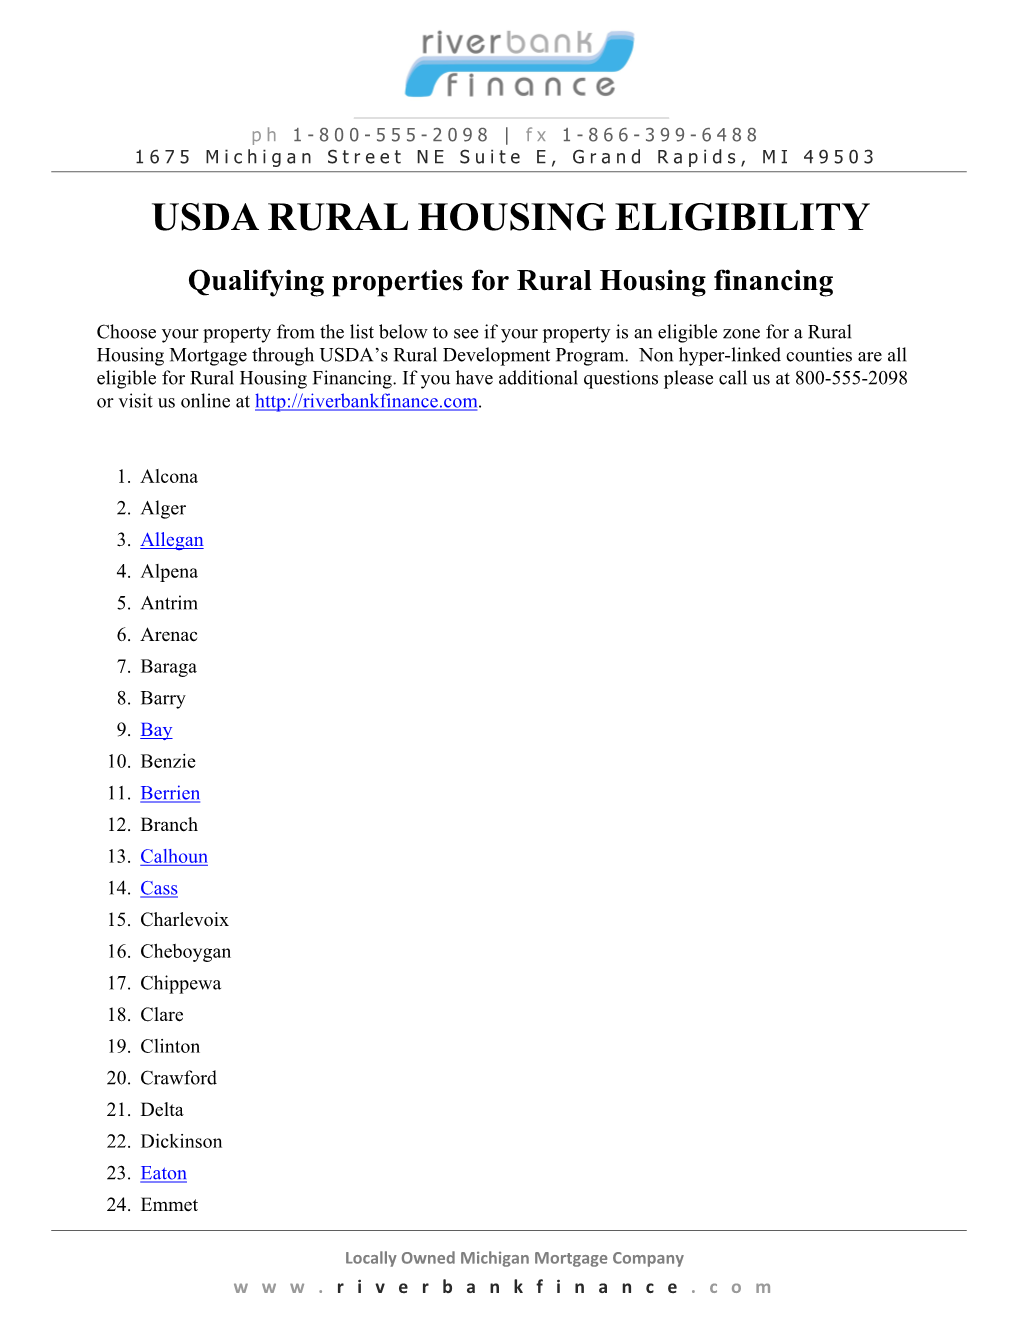 Rural Housing USDA